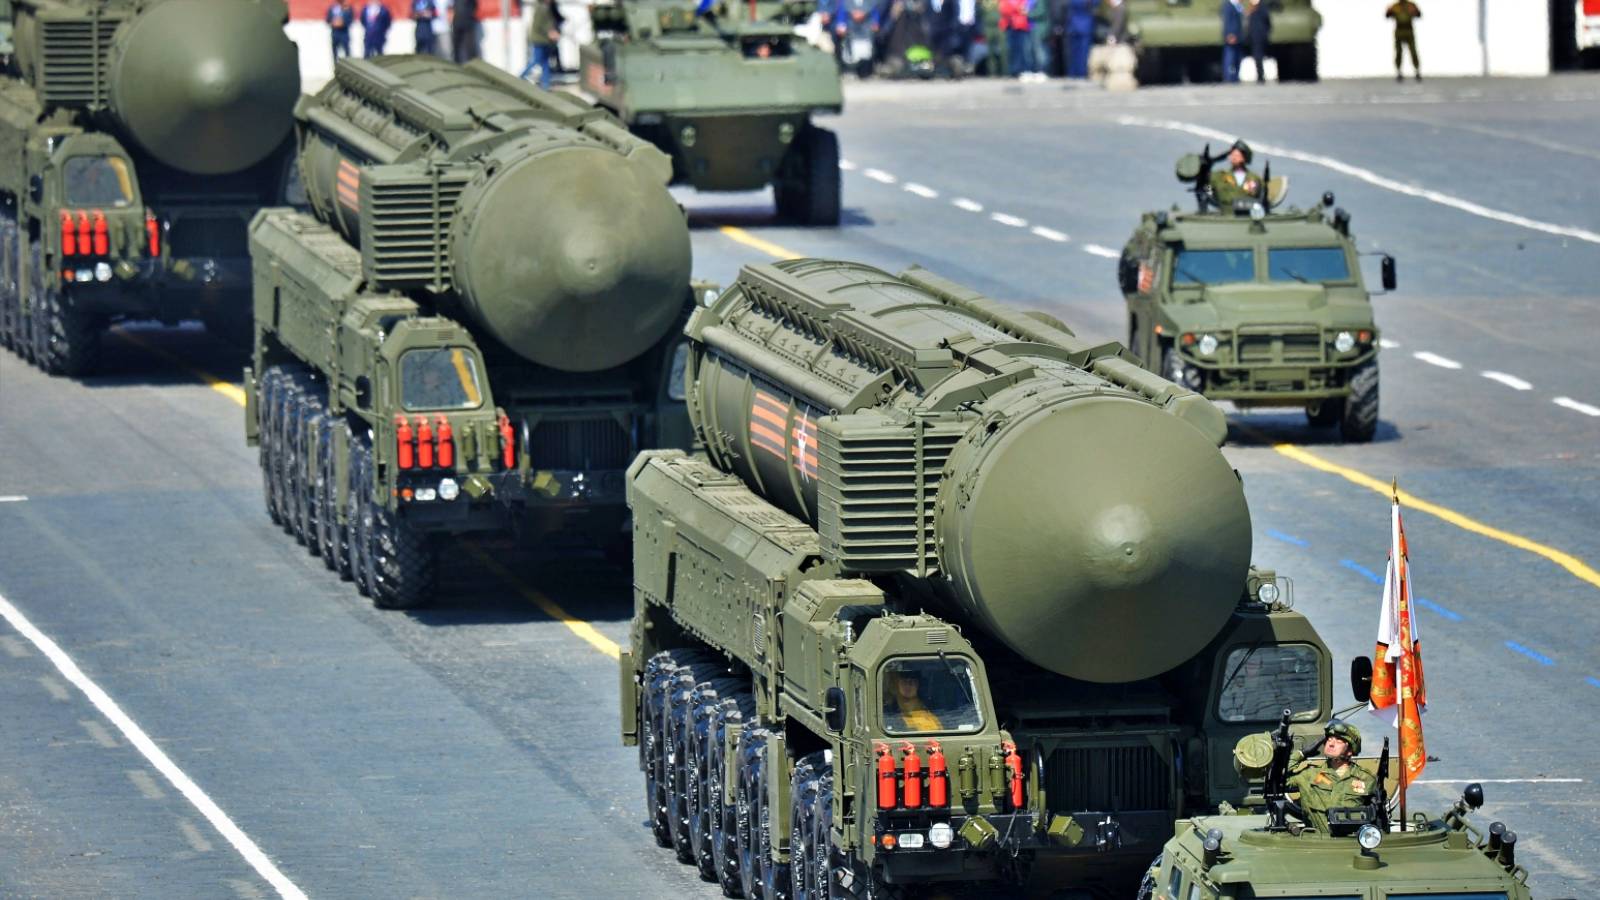 VIDEO Cand va Folosi Rusia Arme Nucleare Impotriva Oricarei Tari